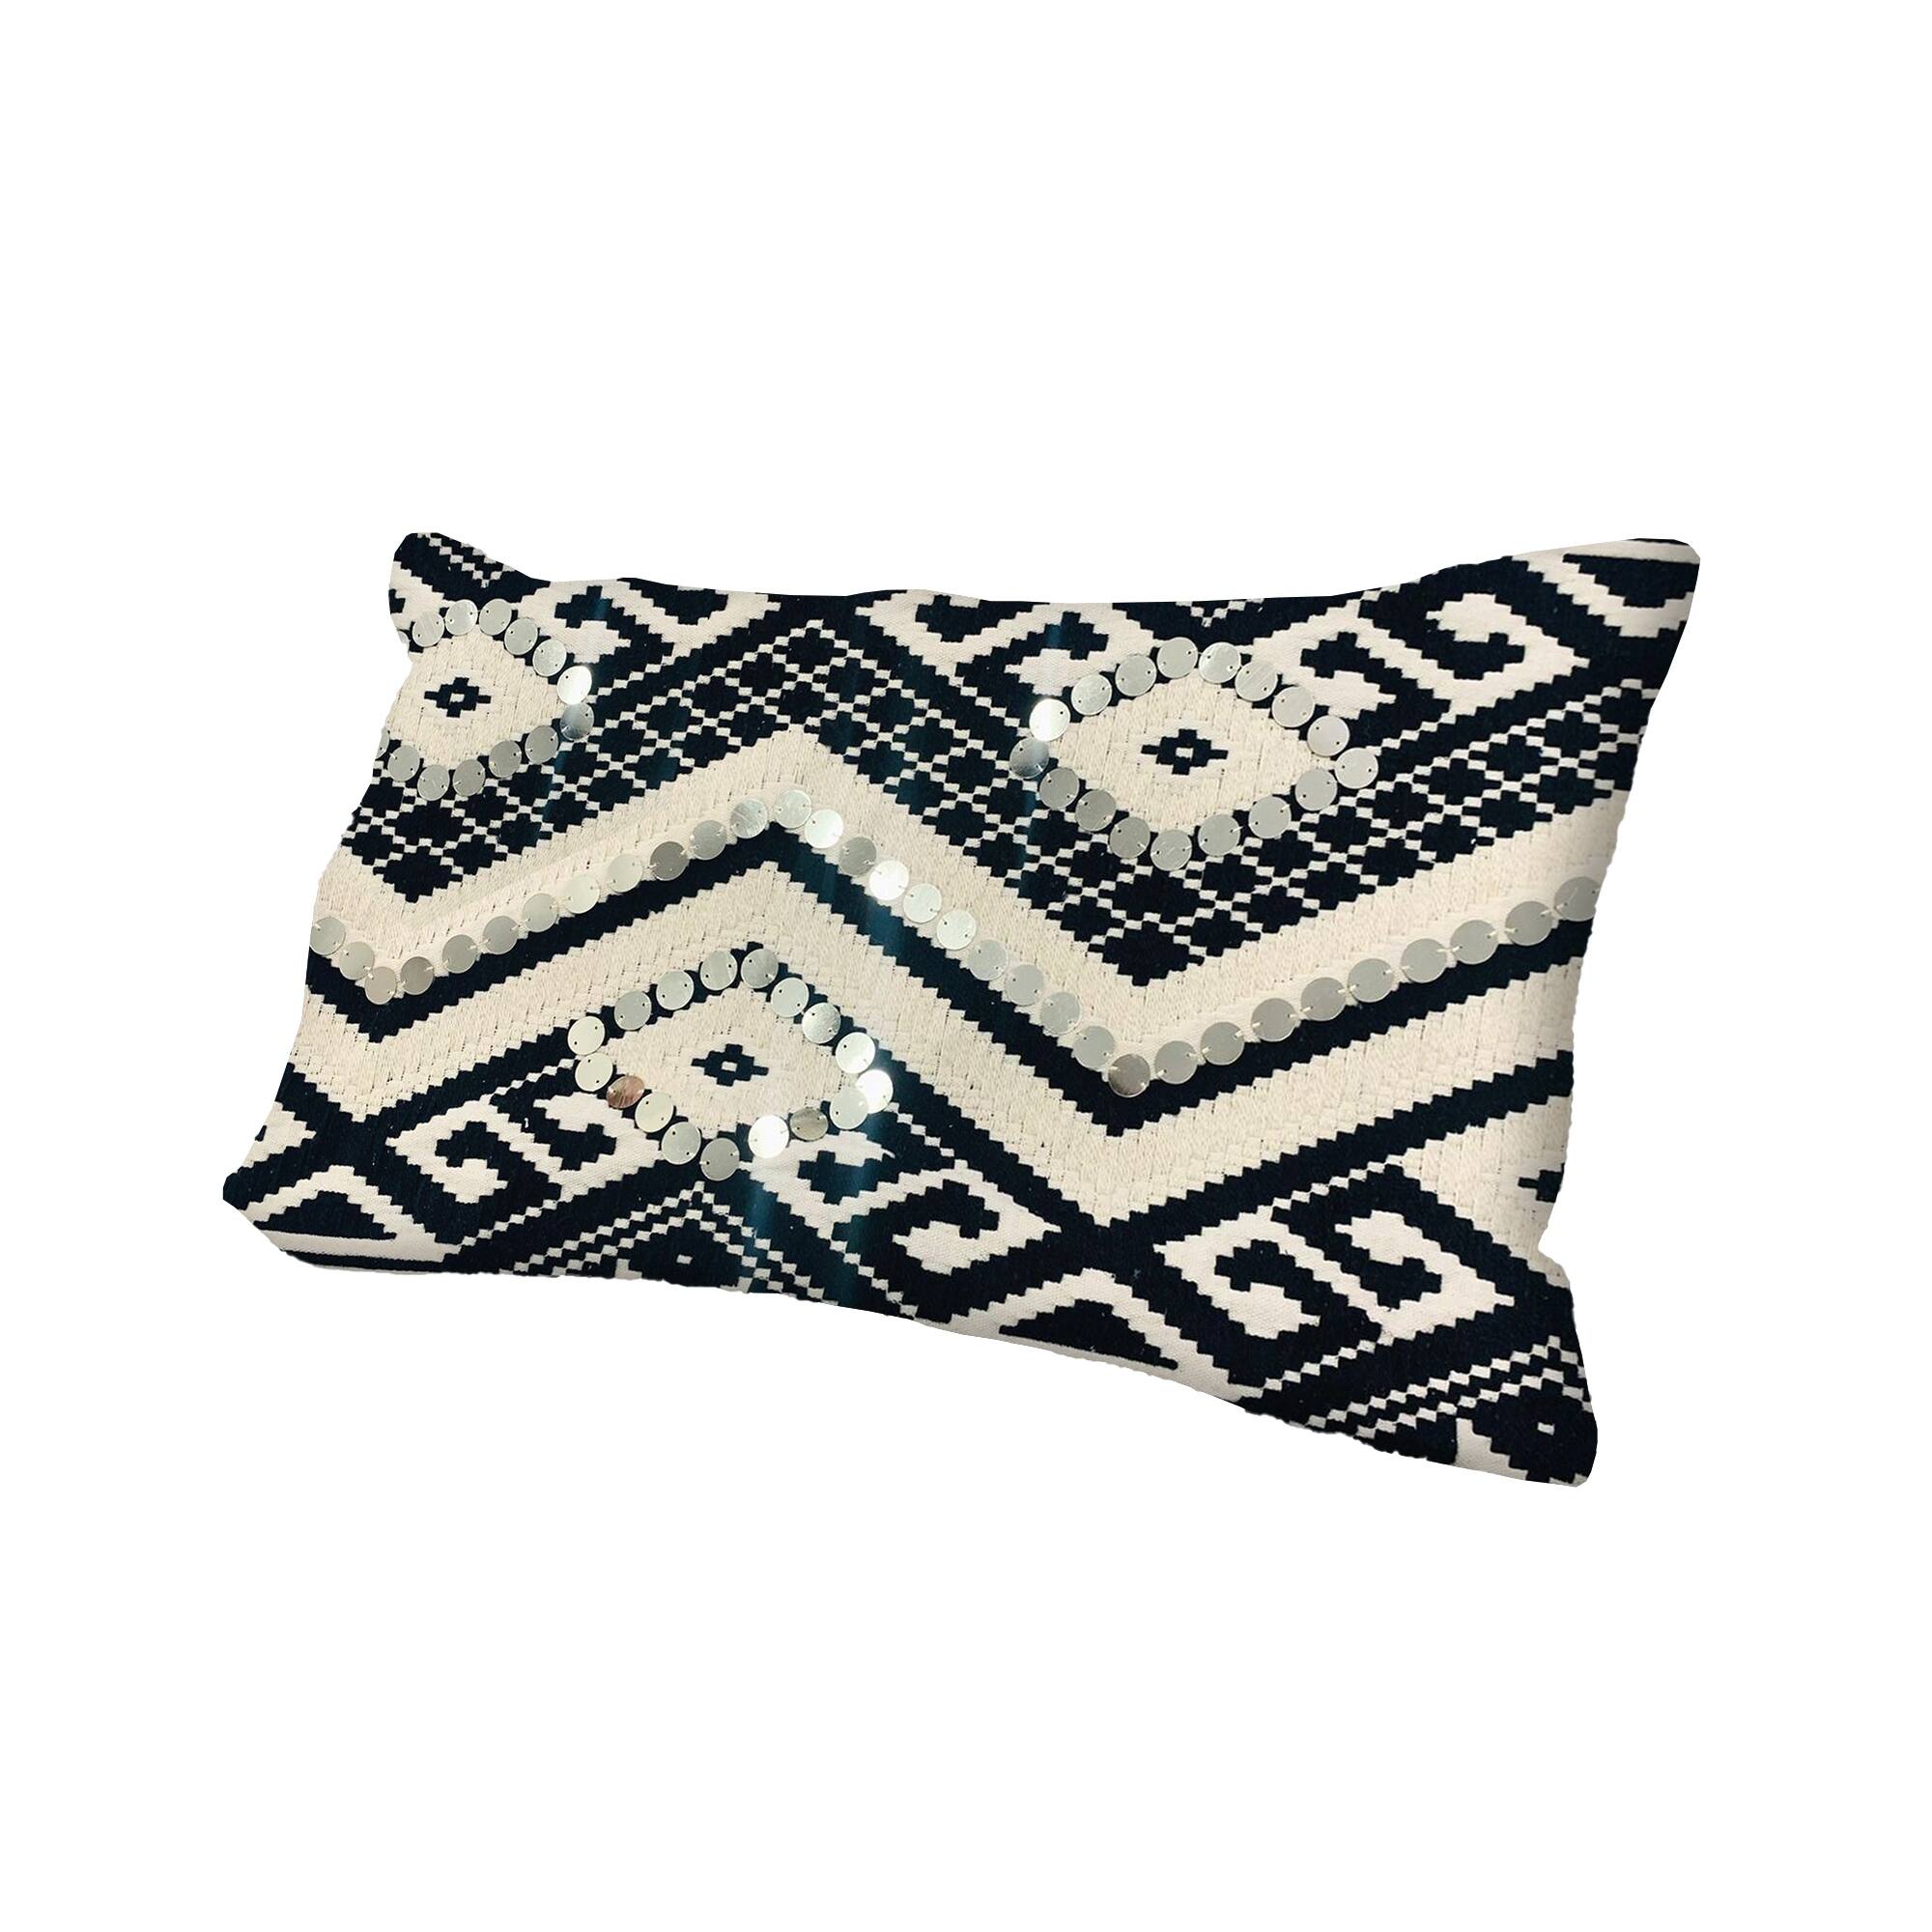 12 x 20 Rectangular Cotton Accent Lumbar Pillow, Classic Aztec Pattern ...